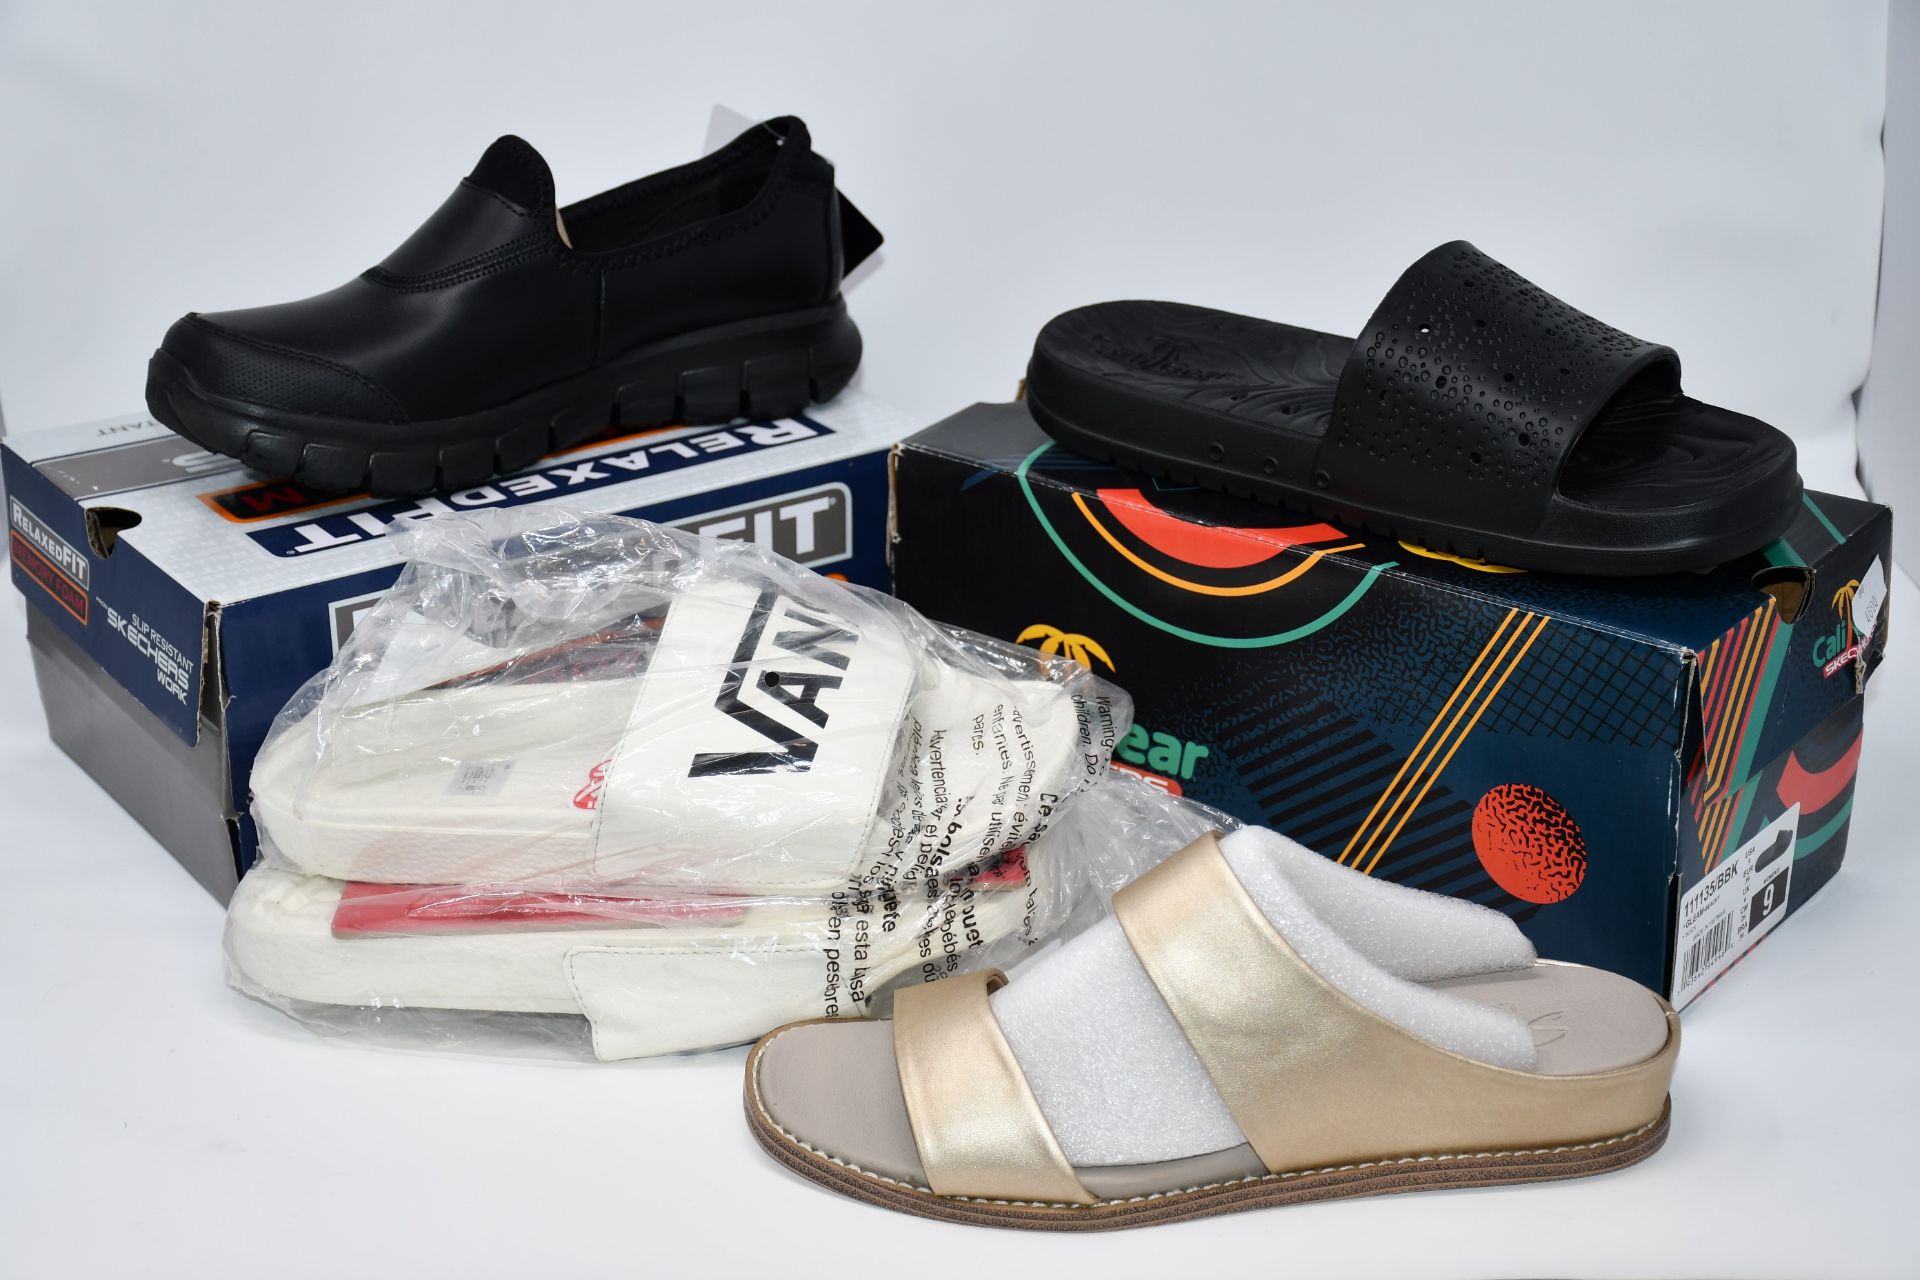 Three pairs of as new Skechers footwear; Sweet Chic Groupie (UK 6), gleam Beachy (UK 6) and Sure